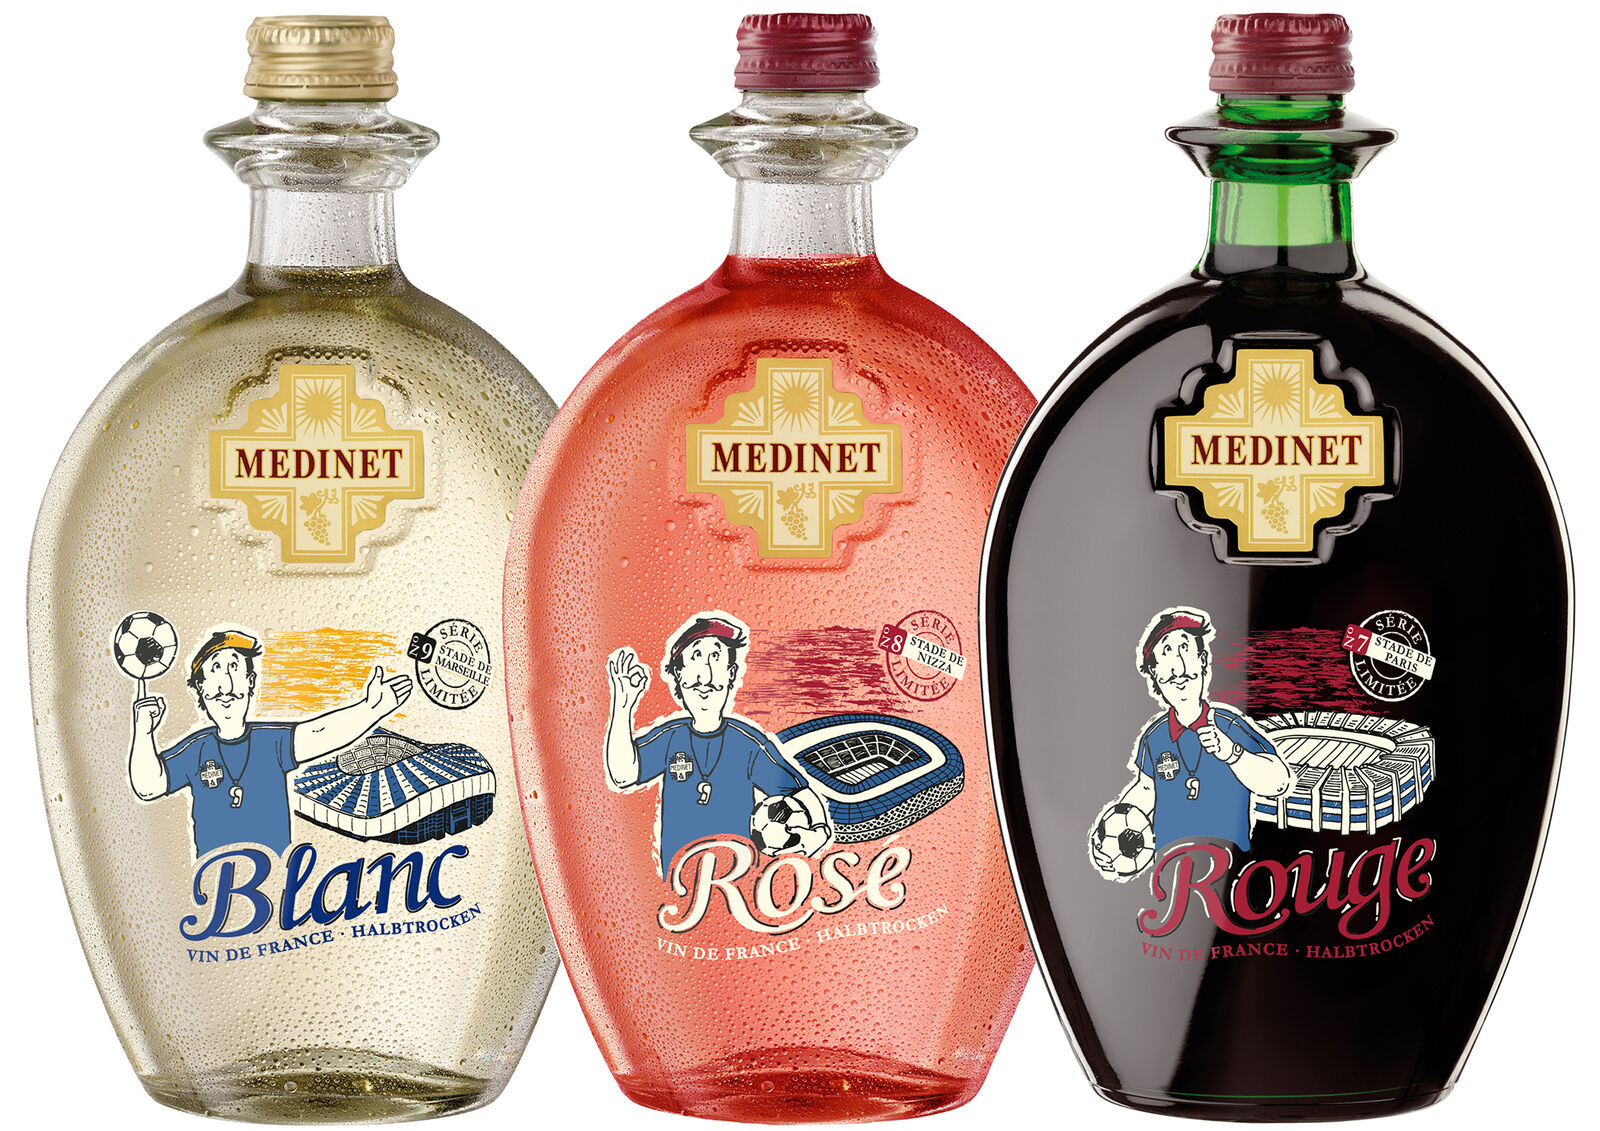 MEDINET‘s Henrí, der sympathische Franzose, stellt auf der Flasche von MEDINET Rouge, Blanc und Rosé, die bekannten Spielorte und Stadien in Paris, Marseille und Nizza vor.